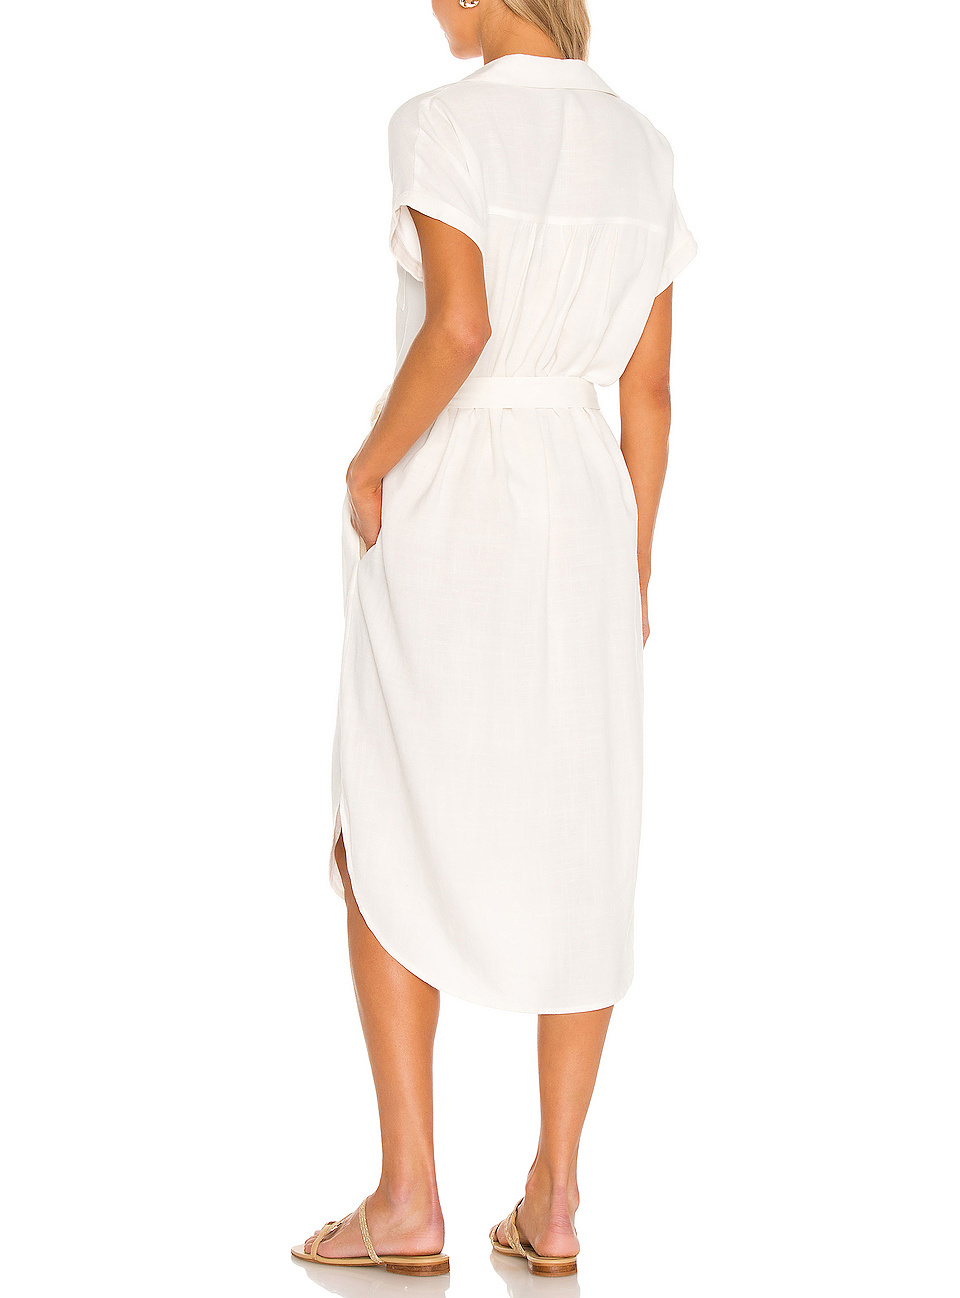 Women MIDI Dress Summer White Button Down Shirt Dresses Casual Linen Dress Women